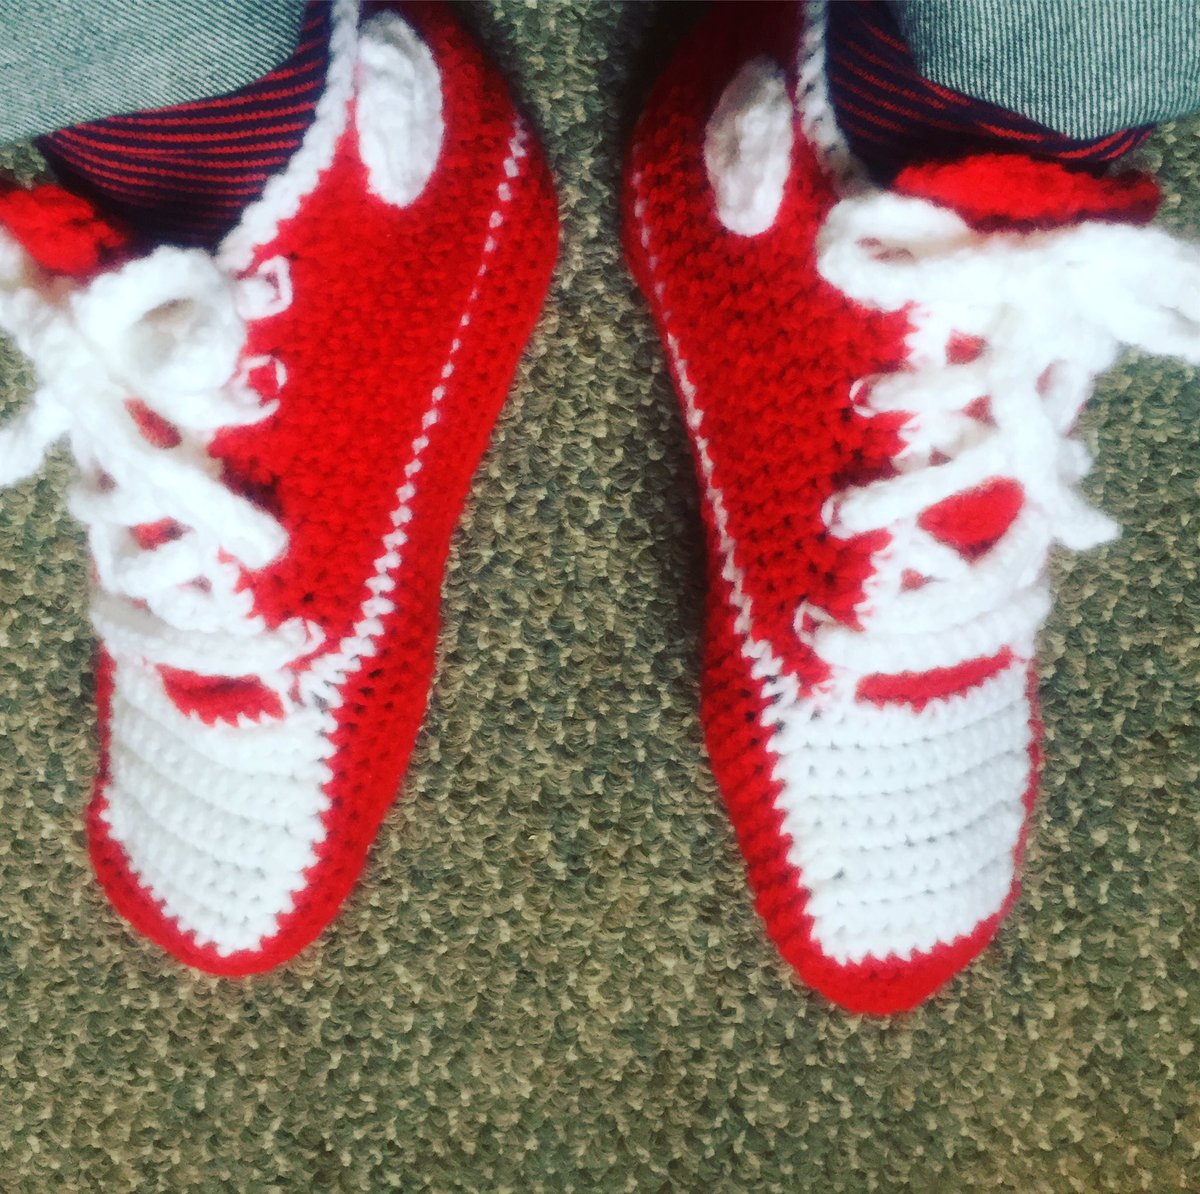 Converse Knitted Slippers Pattern Jeffery Straker On Twitter I Often Wear Red Converse Sneakers